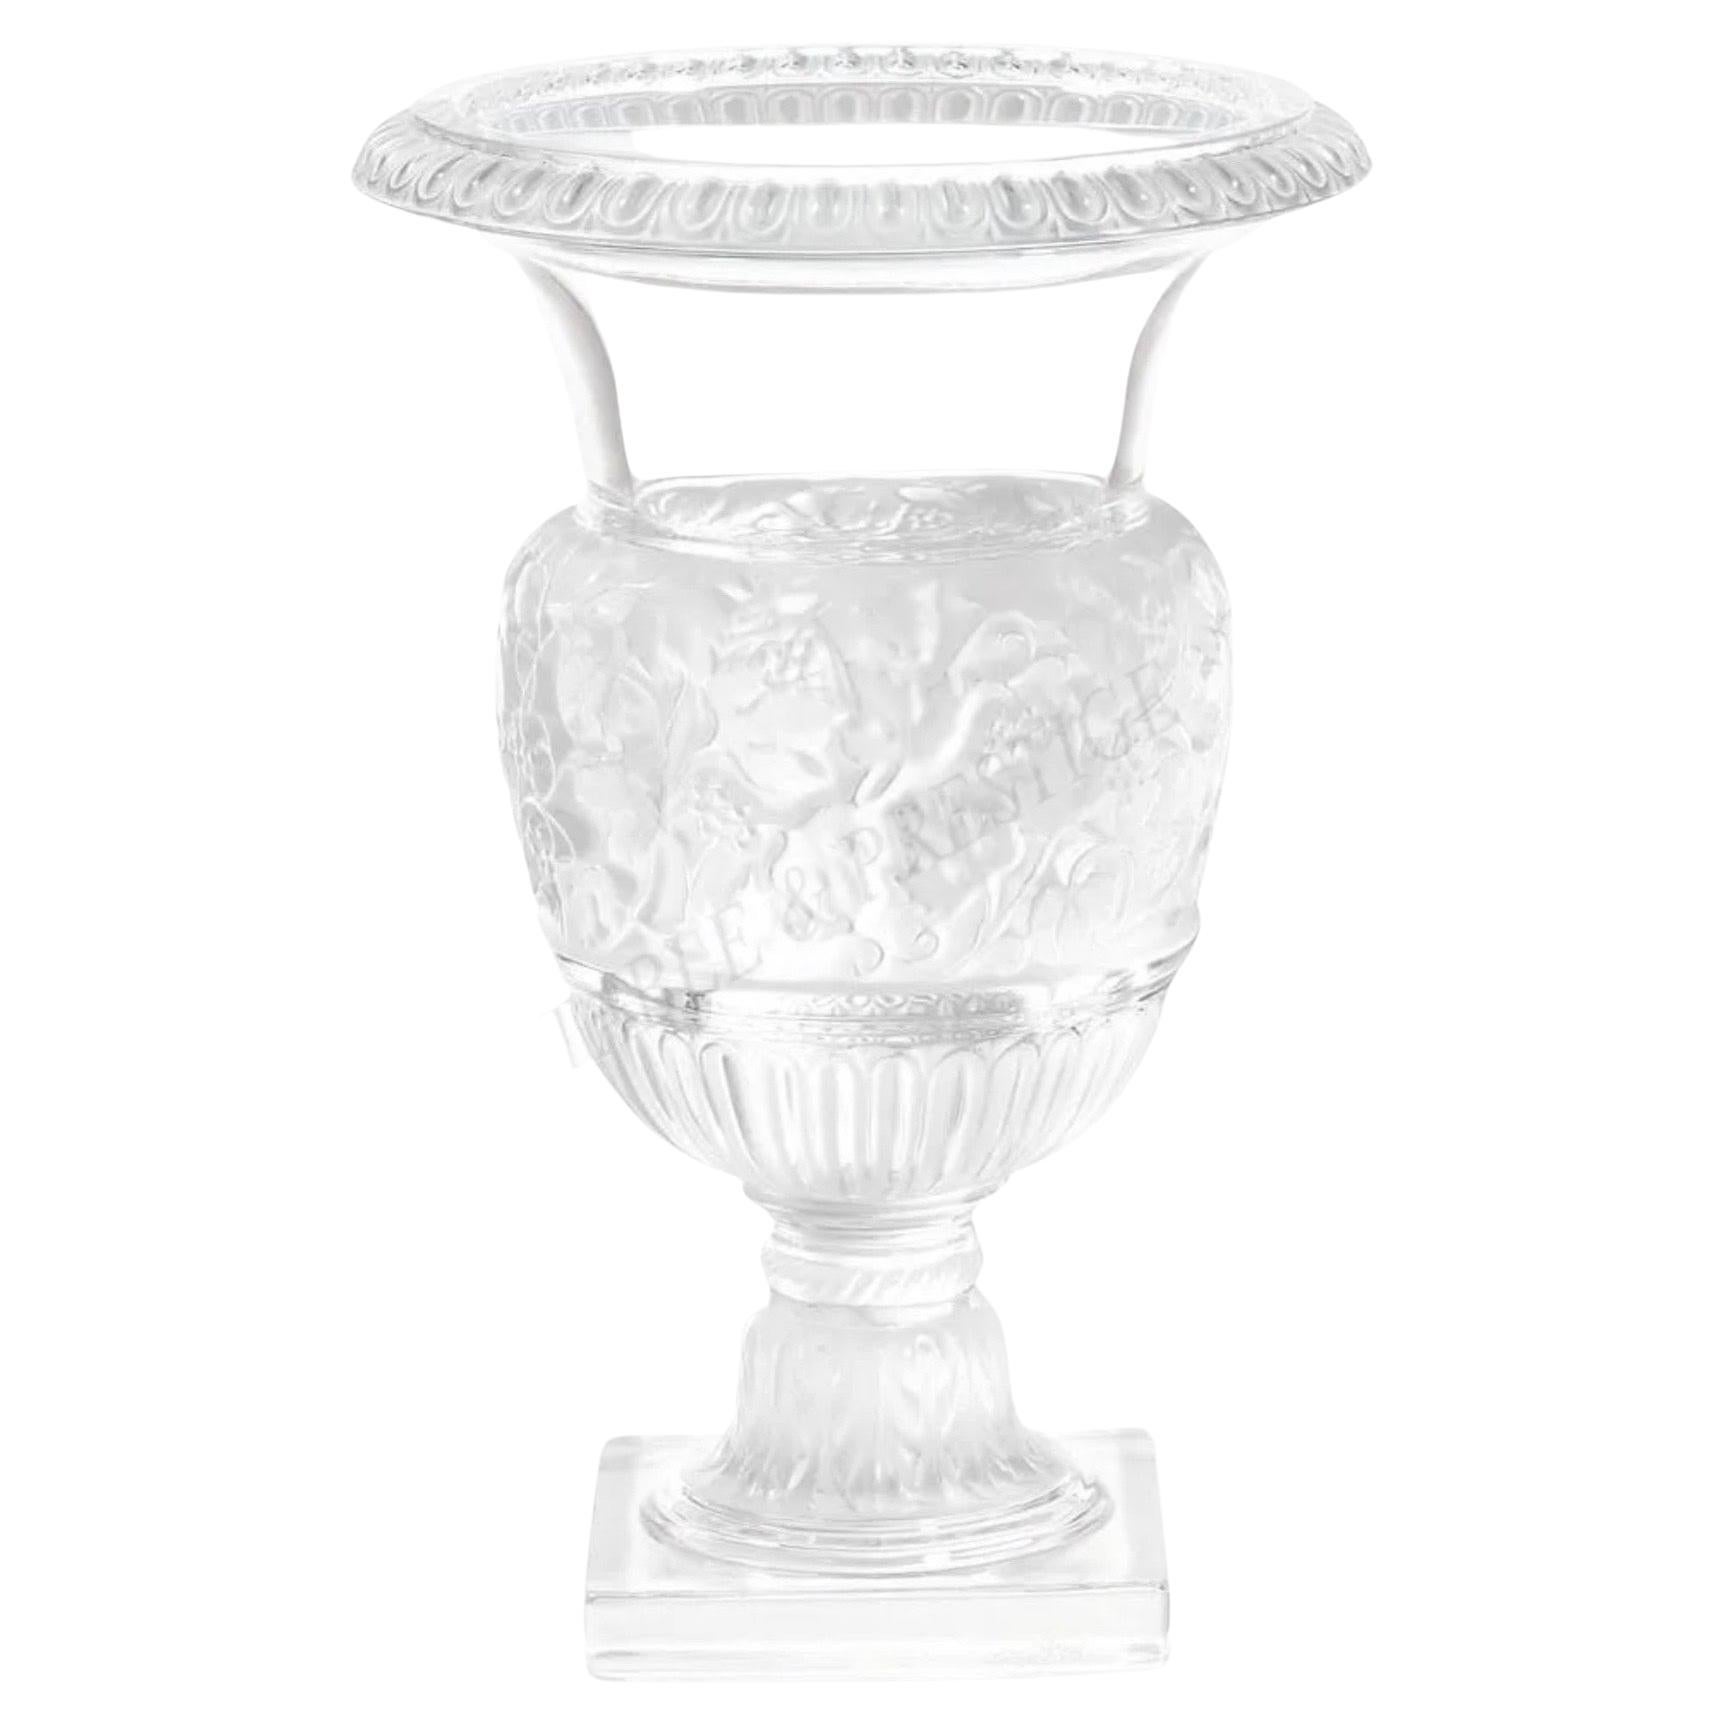 Massive Versailles Vase / Urn by Lalique of France